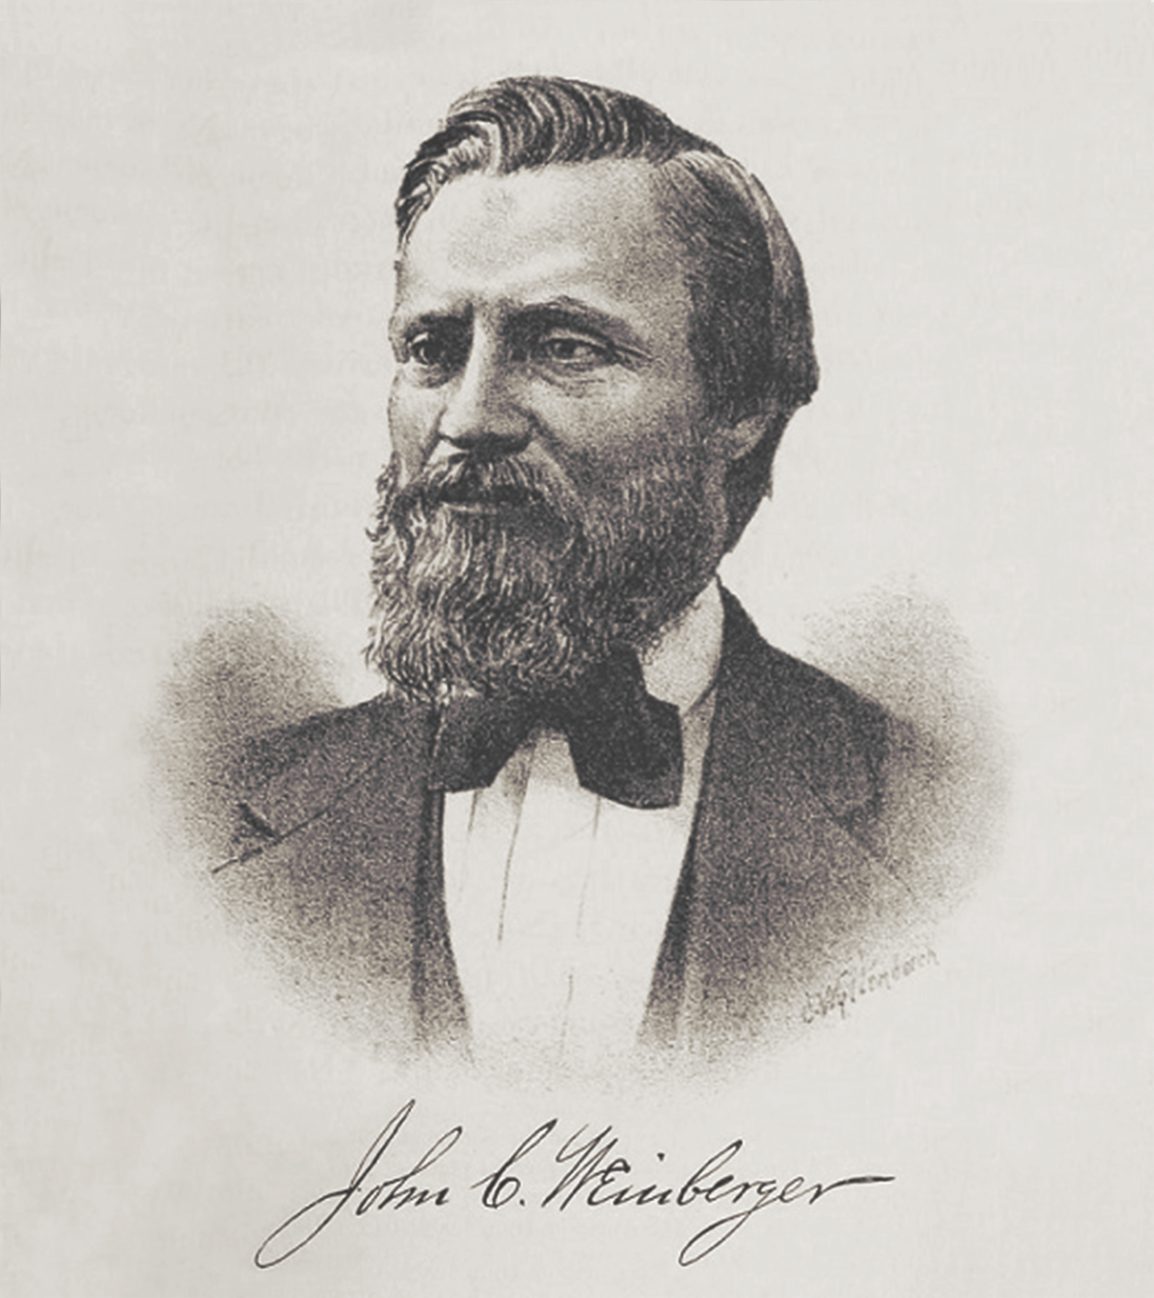 John “JC” Weinberger